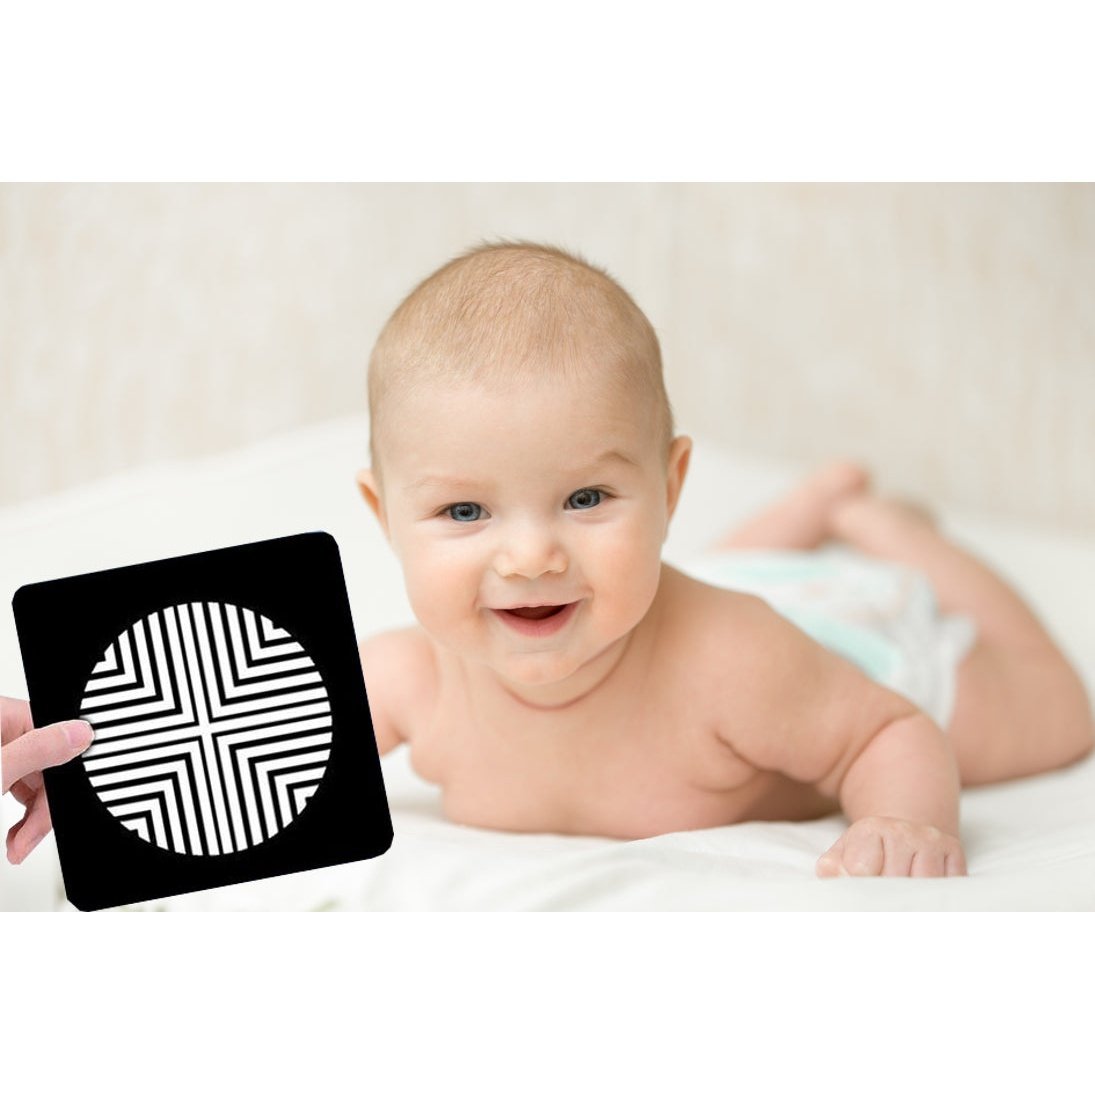 Imagier bébé Montessori - MaMontessoriBox